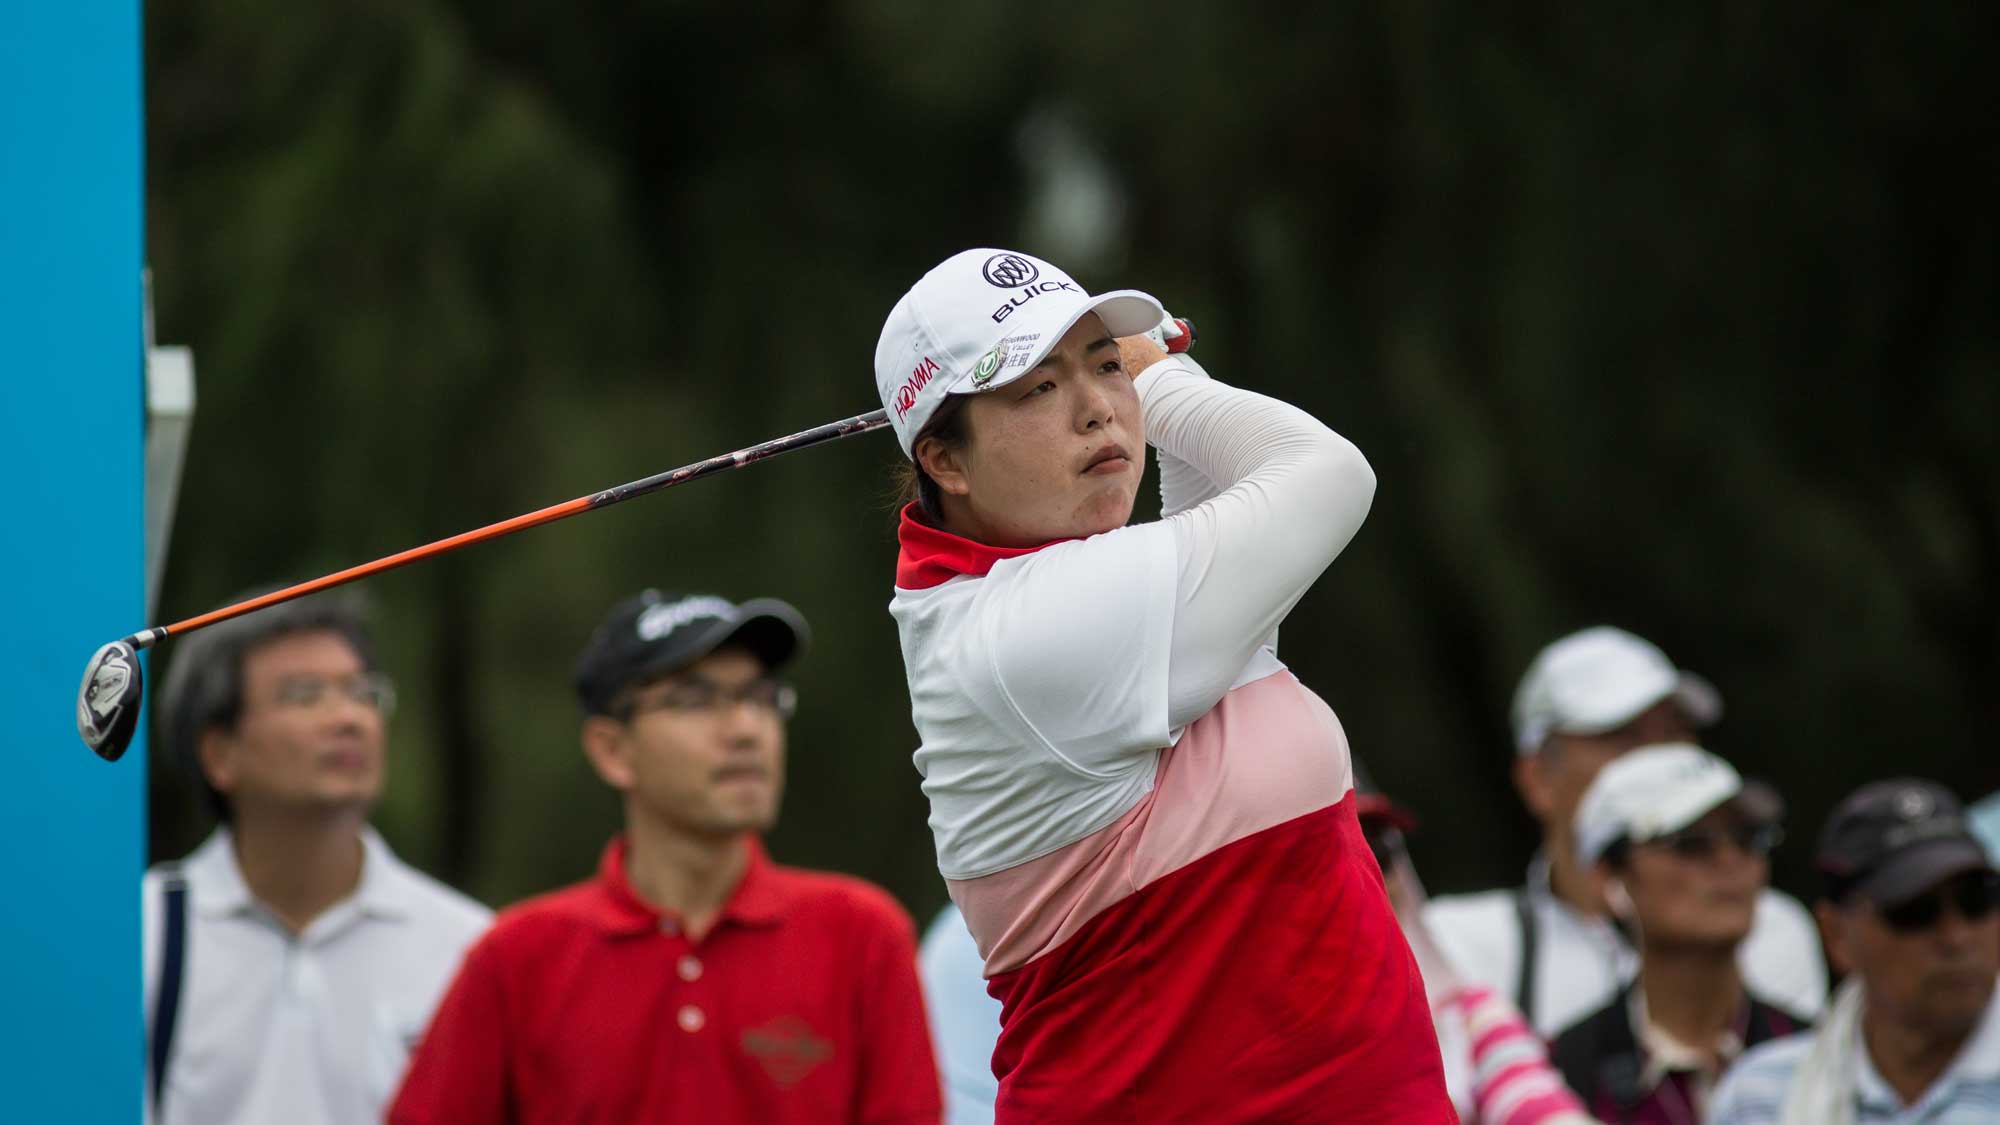 Shanshan Feng of Guangzhou, China plays a shot in the Fubon Taiwan LPGA Championship